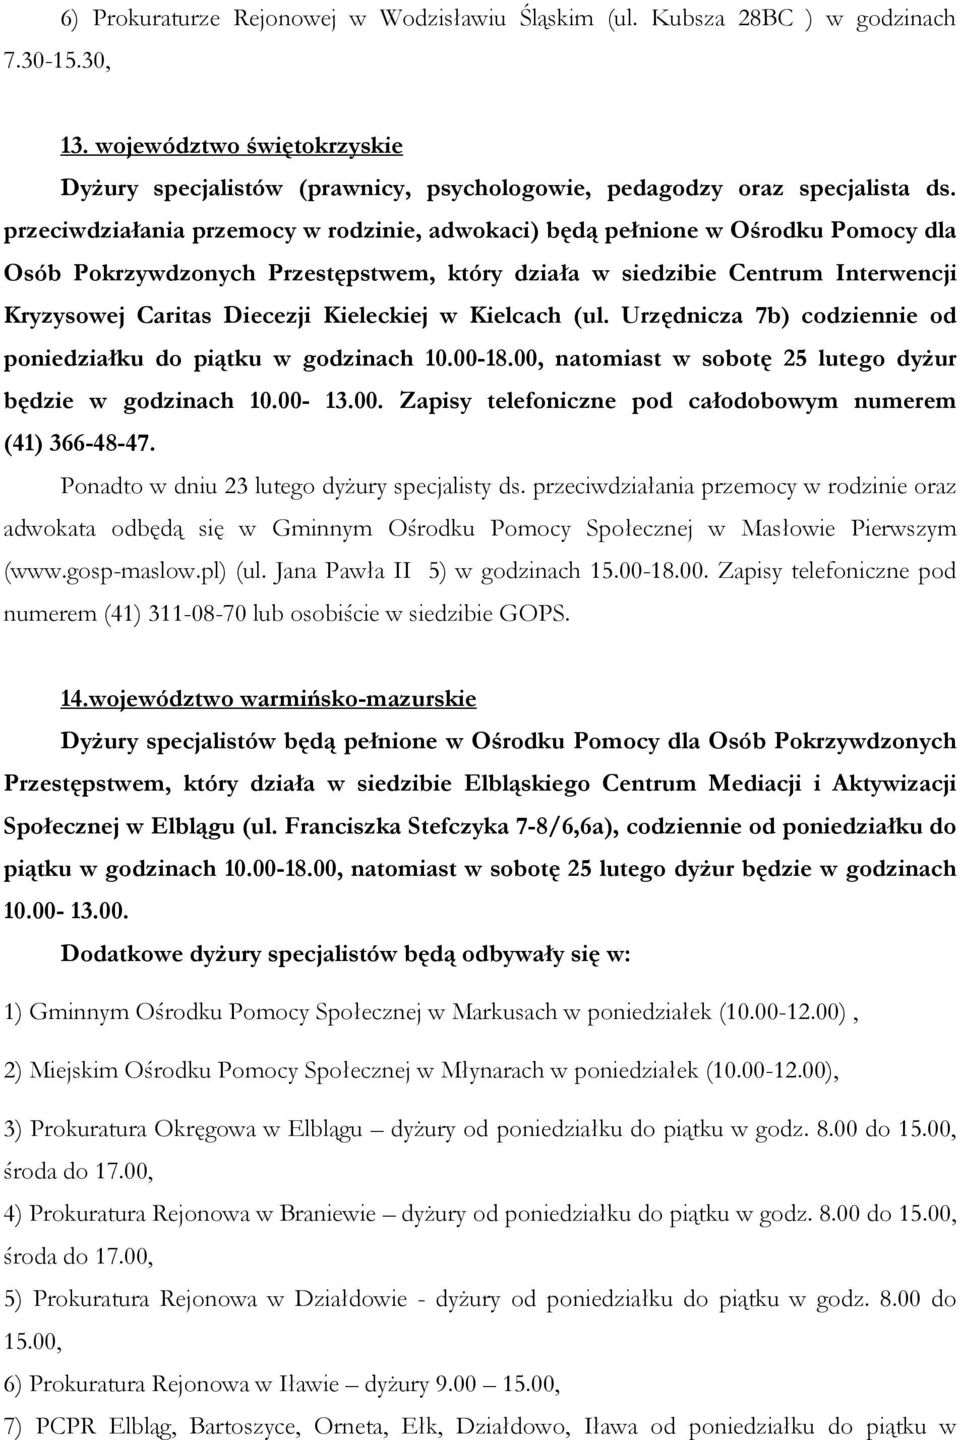 Kieleckiej w Kielcach (ul. Urzędnicza 7b) codziennie od poniedziałku do piątku w godzinach 10.00-18.00, natomiast w sobotę 25 lutego dyżur będzie w godzinach 10.00-13.00. Zapisy telefoniczne pod całodobowym numerem (41) 366-48-47.